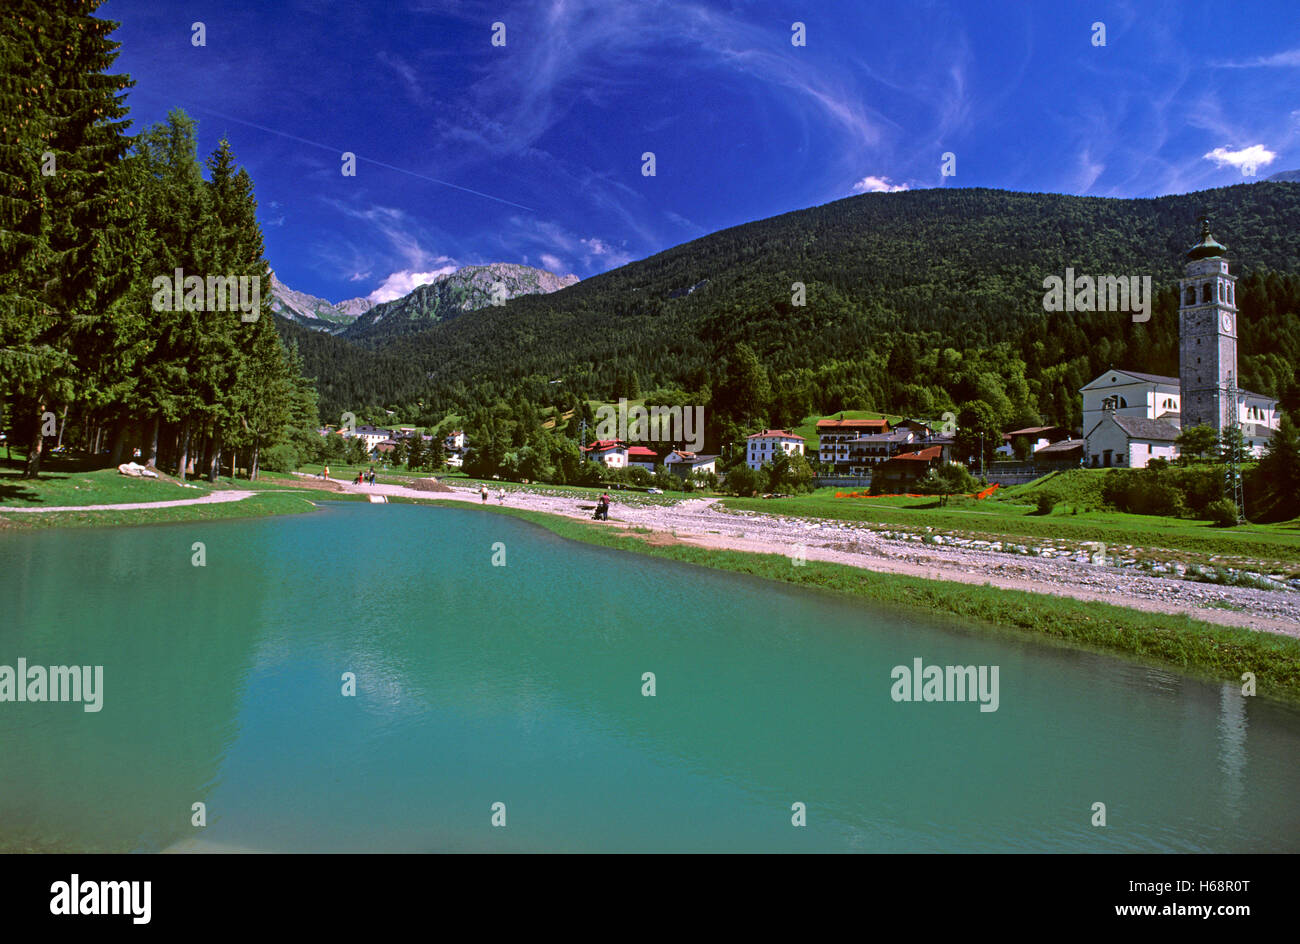 Piccolo lago a Forni di Sopra, la Carnia, Dolomiti Friulane parco naturale, Friuli Venezia Giulia, Italia Foto Stock